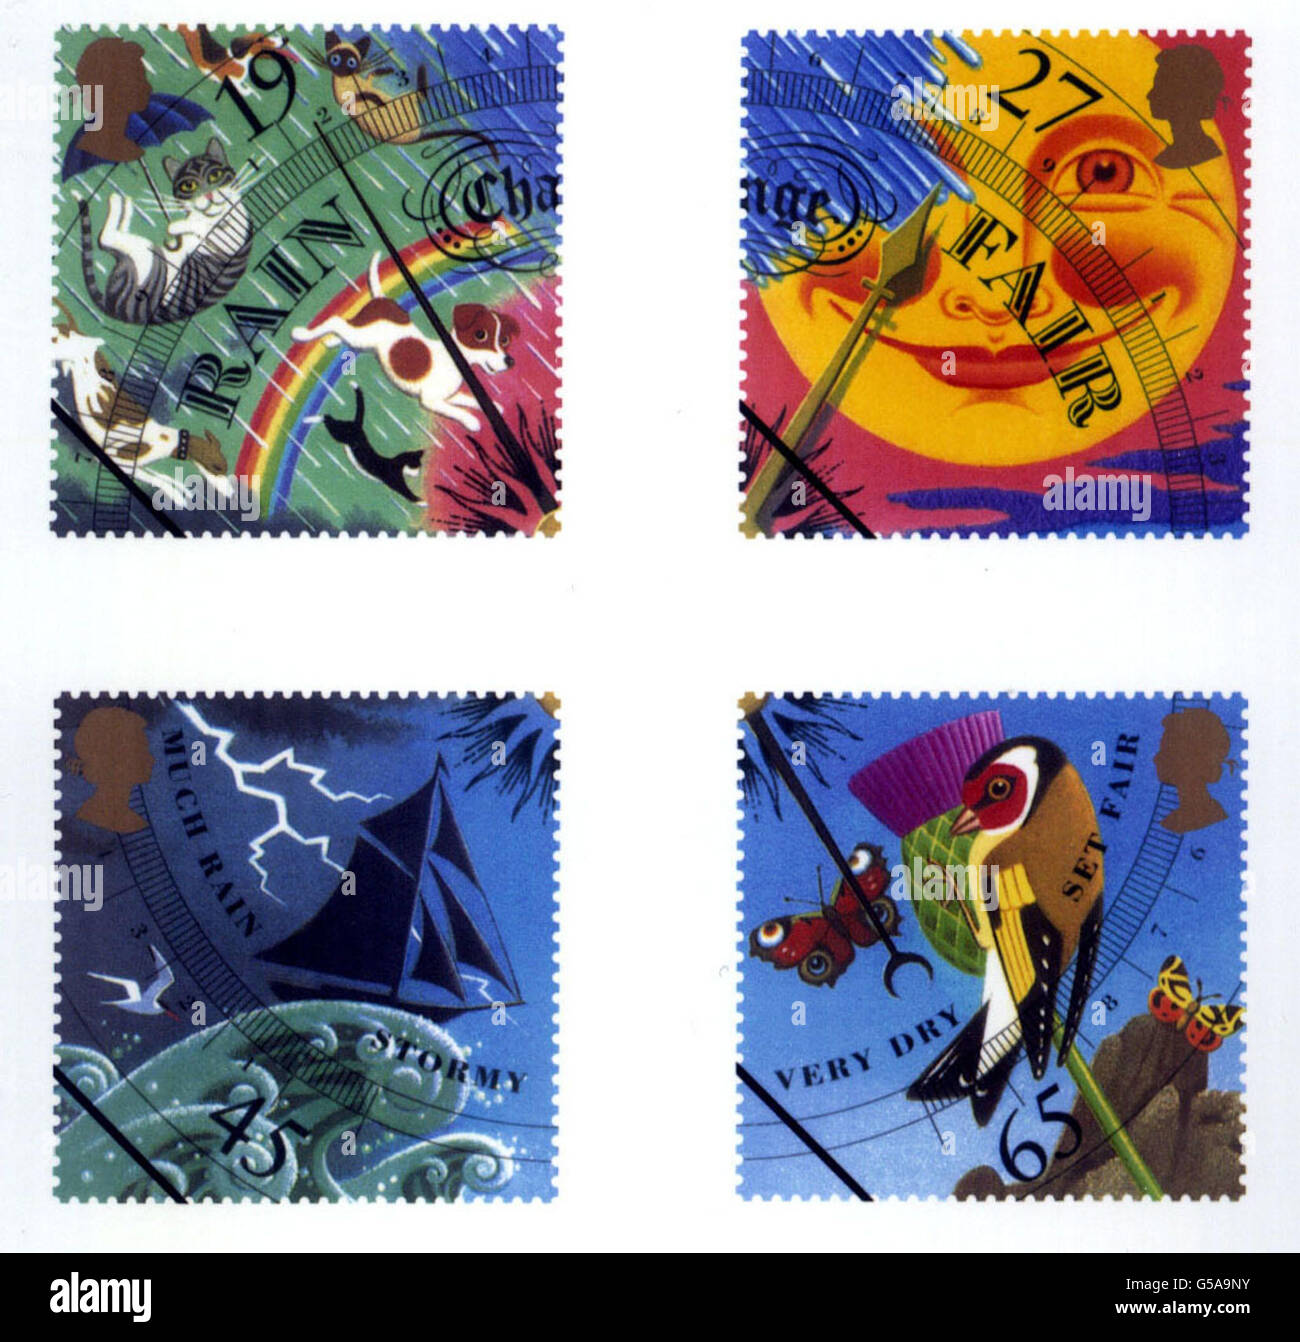 Royal Mail's Heat Sensitive 'Weather' Special Edition Briefmarken, die ab März 15 2001 bei der Post zur Verfügung gestellt werden. Stockfoto